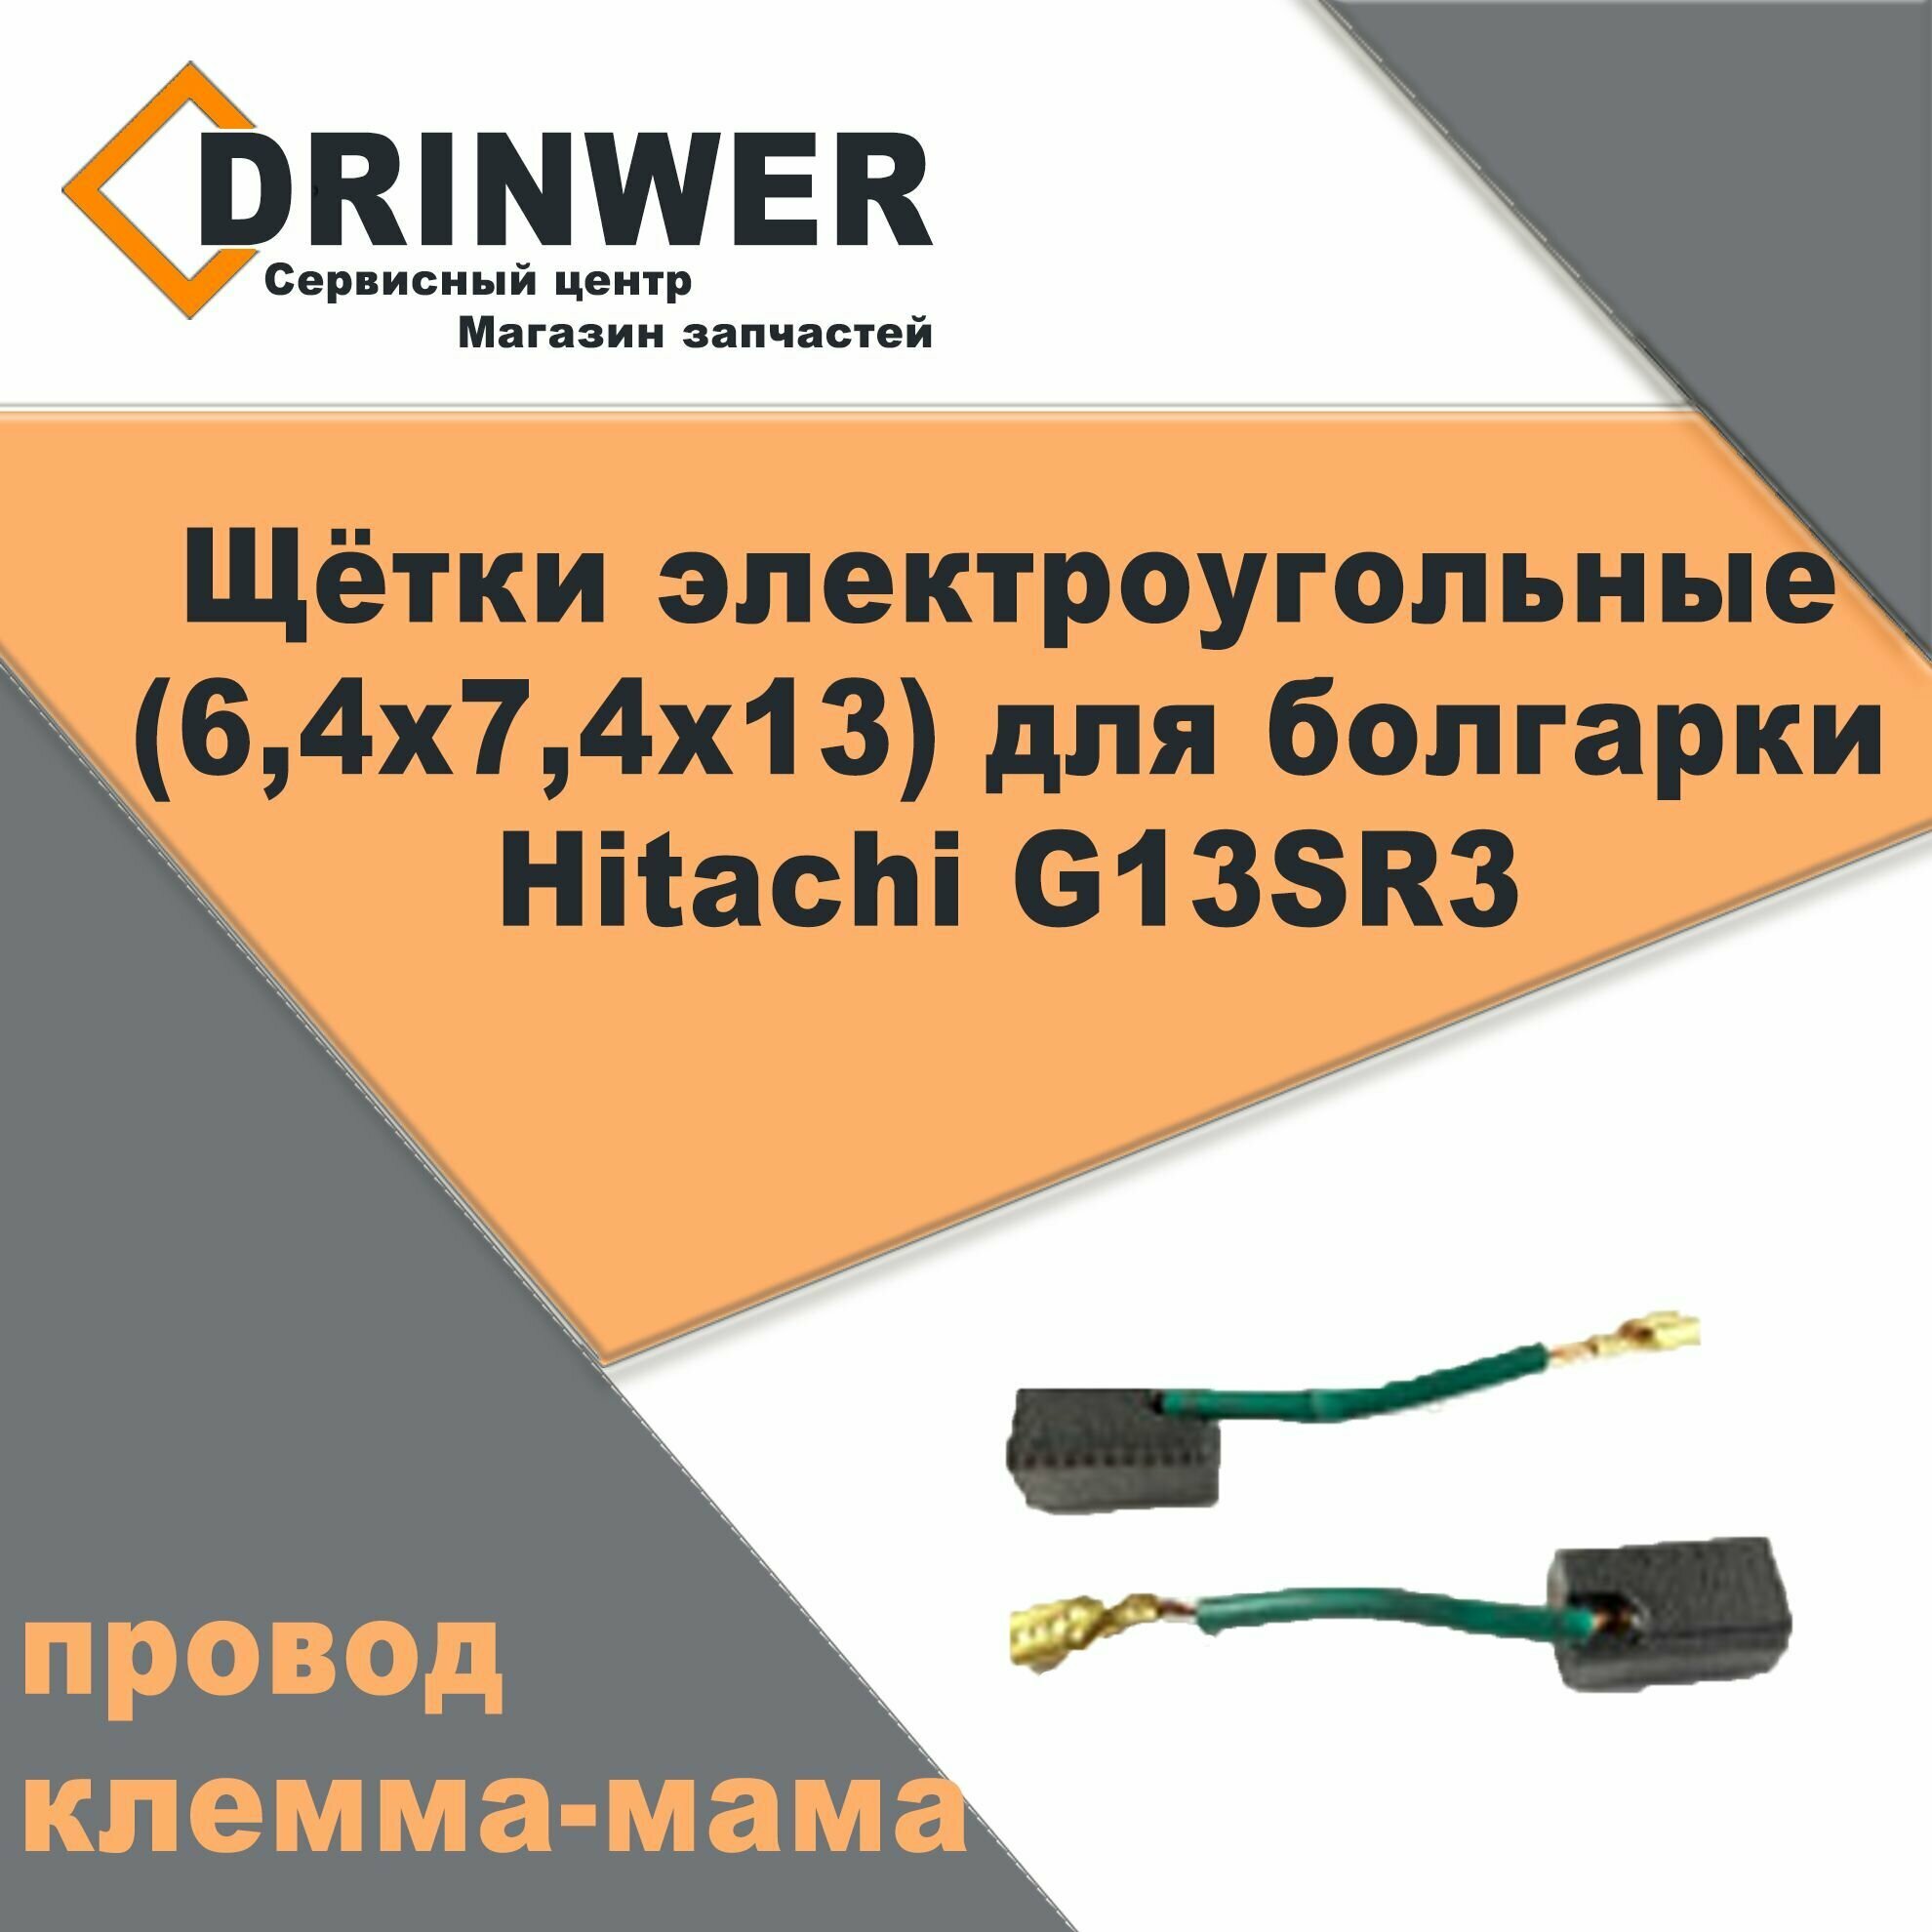 Щётки электроугольные (6,4х7,4х13) для болгарки Hitachi G13SR3 (поводок клемма-мама) - фотография № 2